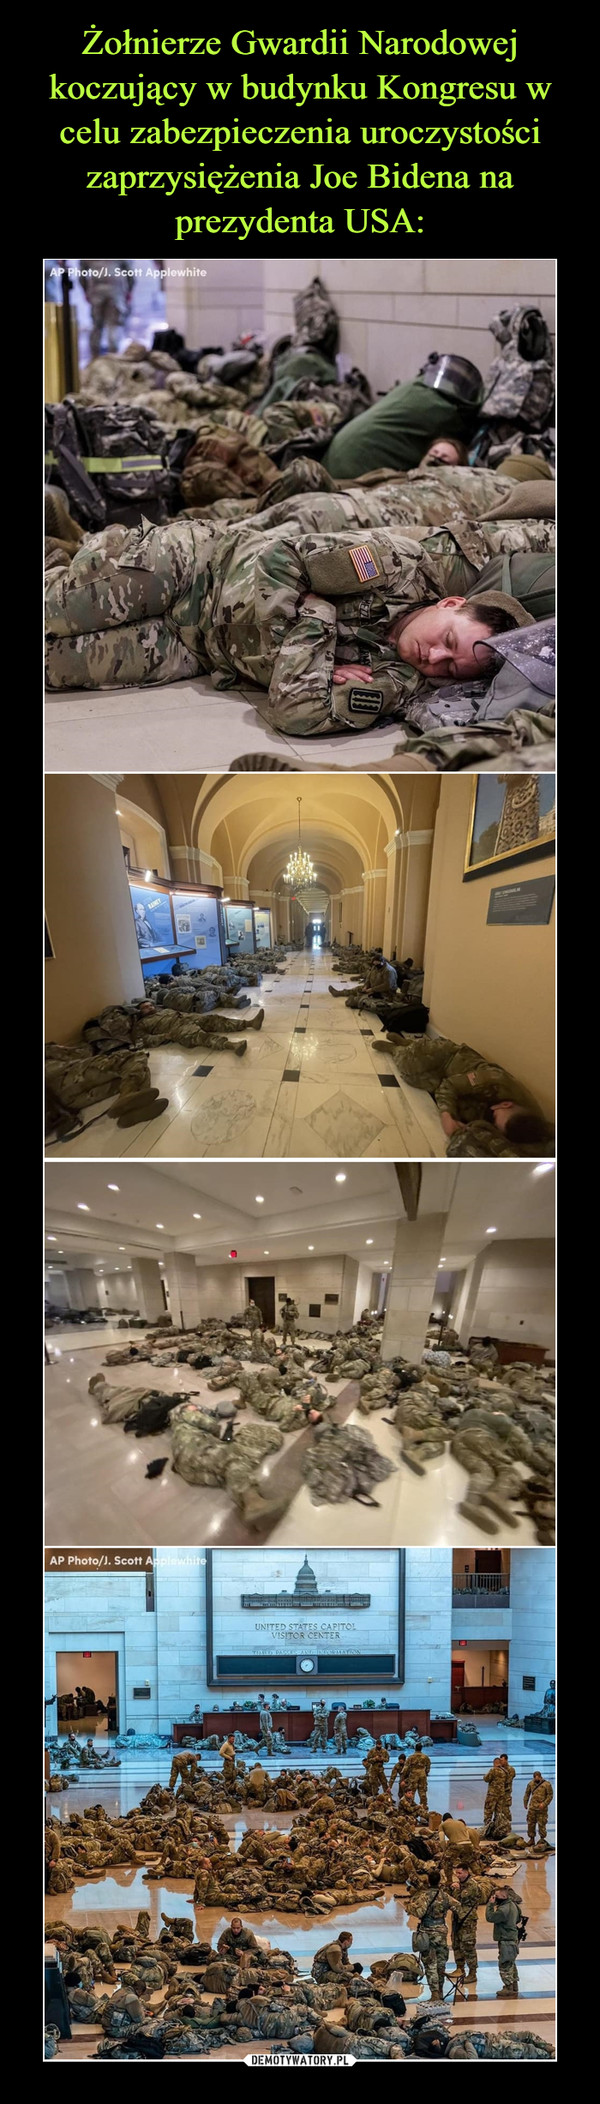 Żołnierze Gwardii Narodowej koczujący w budynku Kongresu w celu zabezpieczenia uroczystości zaprzysiężenia Joe Bidena na prezydenta USA: